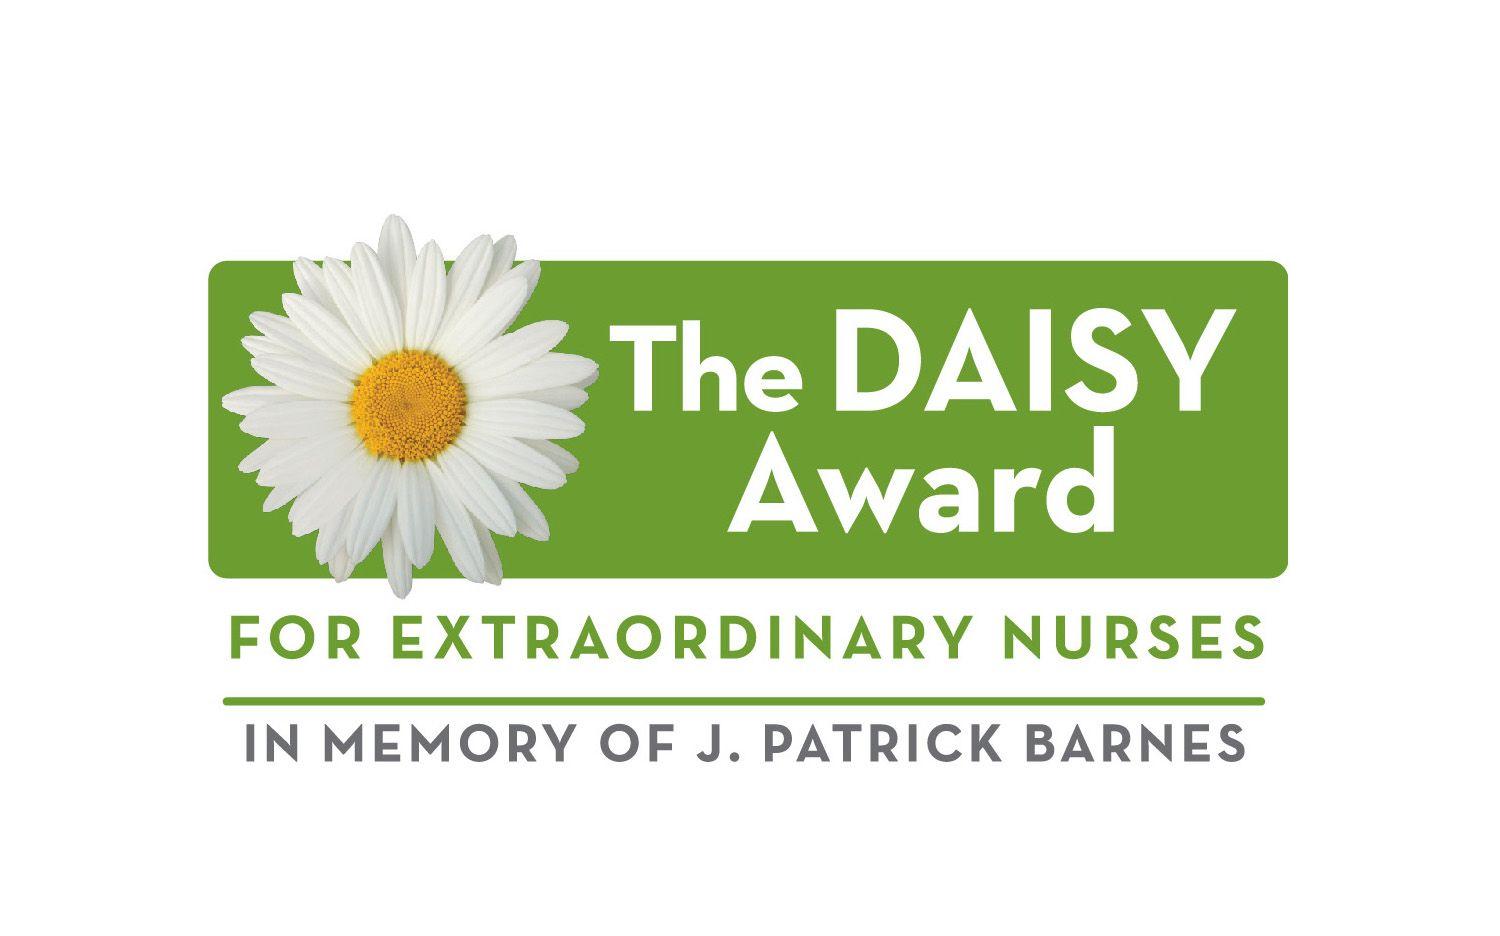 Daisy Award Logo - Introducing The DAISY Award!